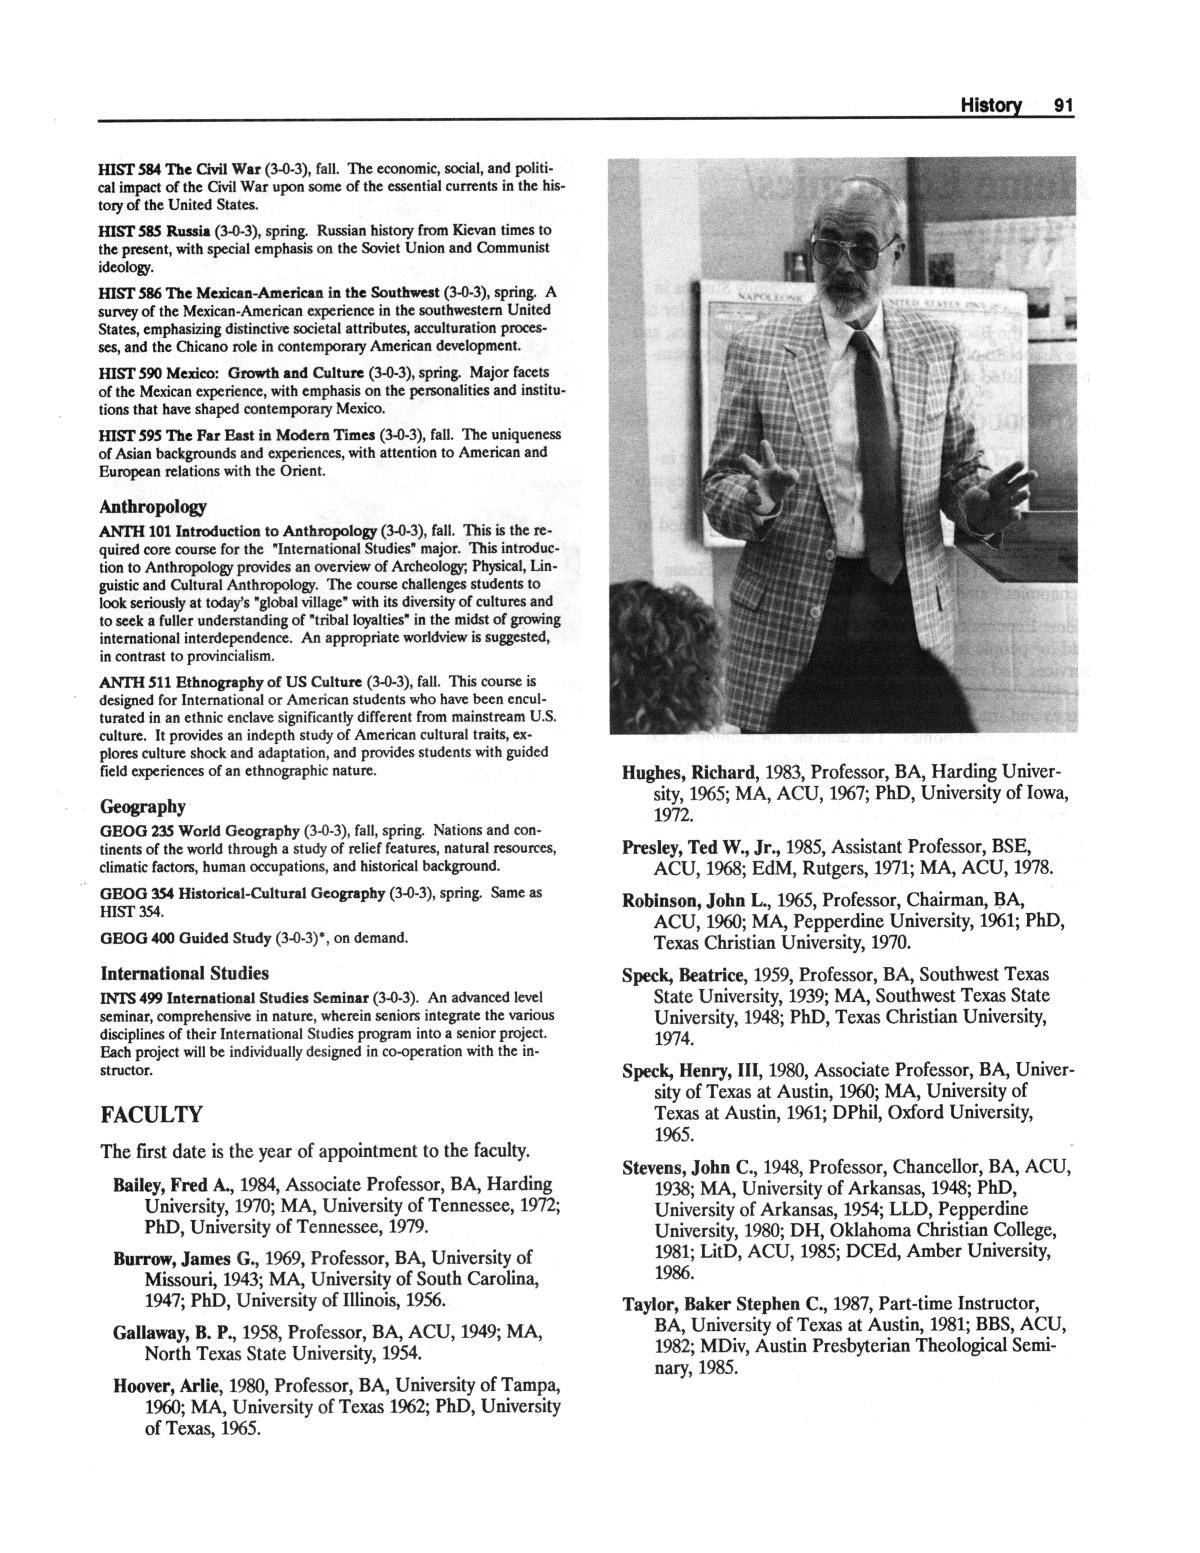 Catalog of Abilene Christian University, 1988-1989
                                                
                                                    91
                                                